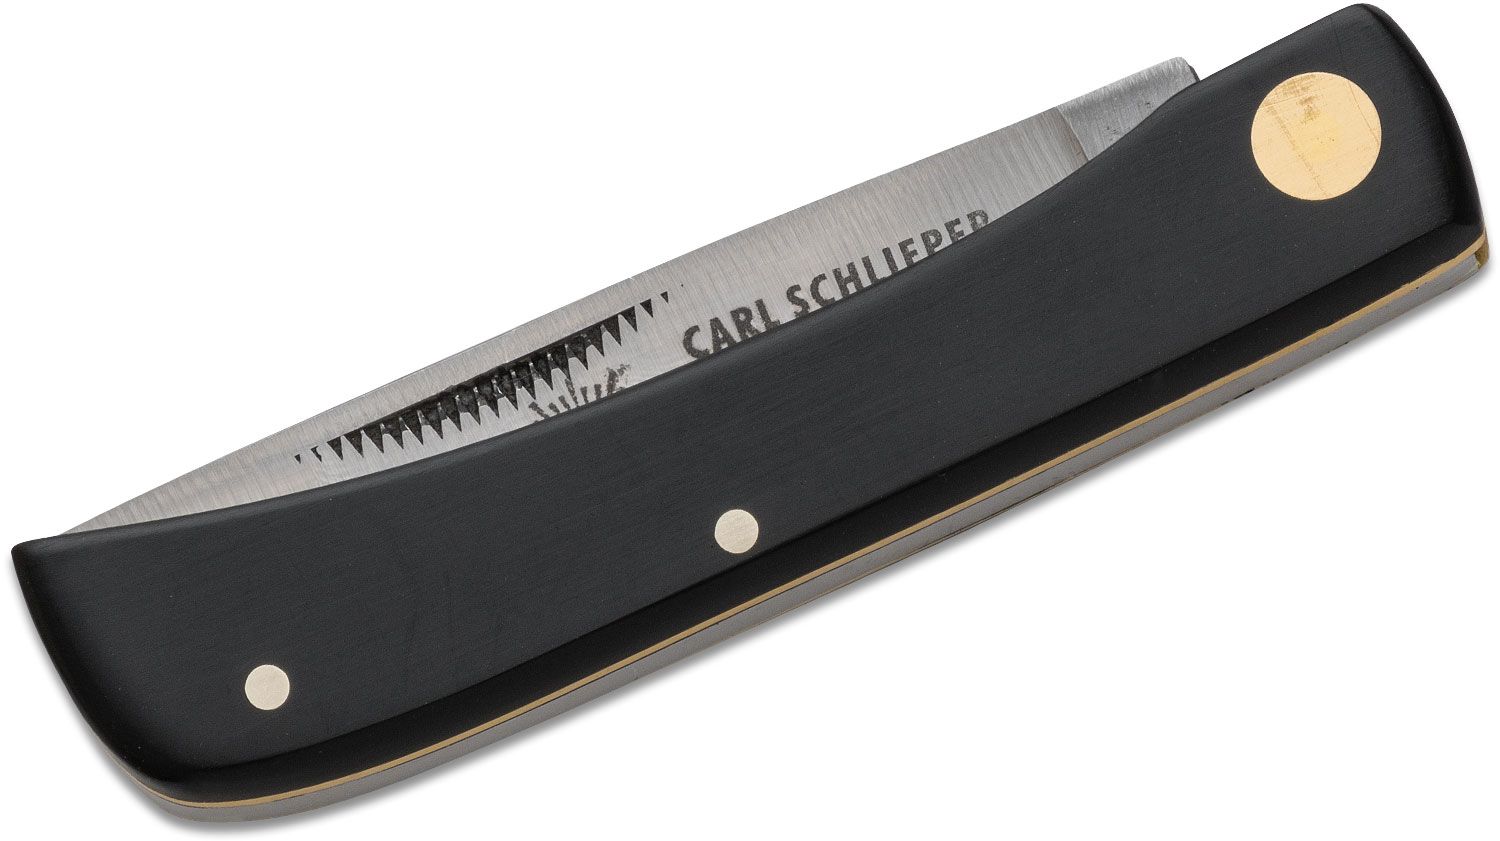 German Eye Brand Carl Schlieper Clodbuster Jr. Folding Knife 2.875 Blade,  Black Celluloid Handles - KnifeCenter - 99JRBL - Discontinued